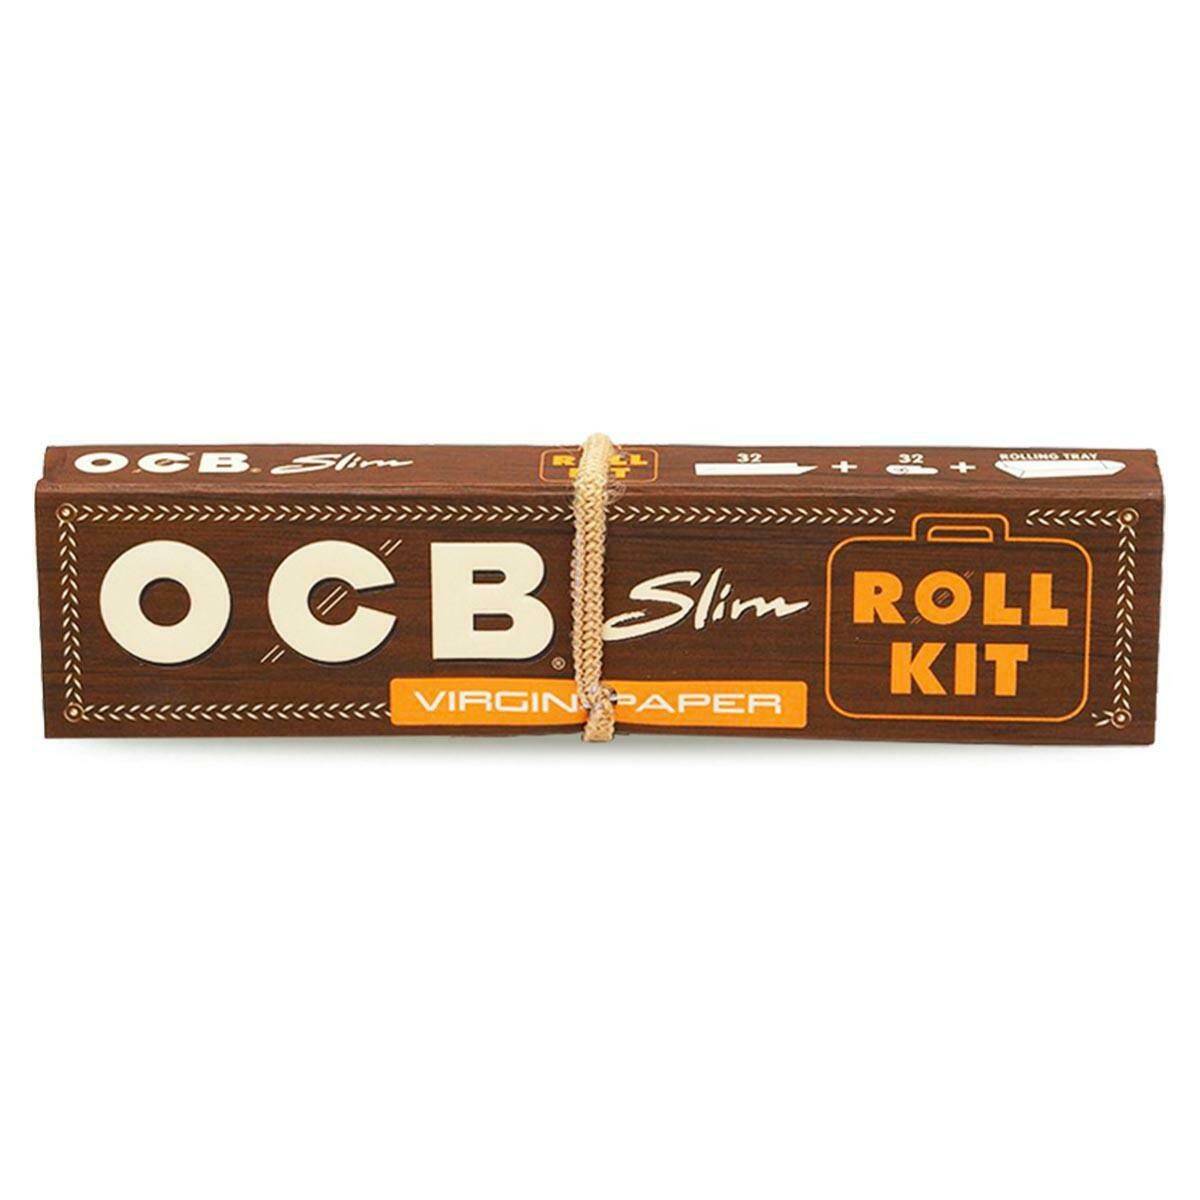 Bibułki OCB Virgin Slim Roll Kit + Filtry